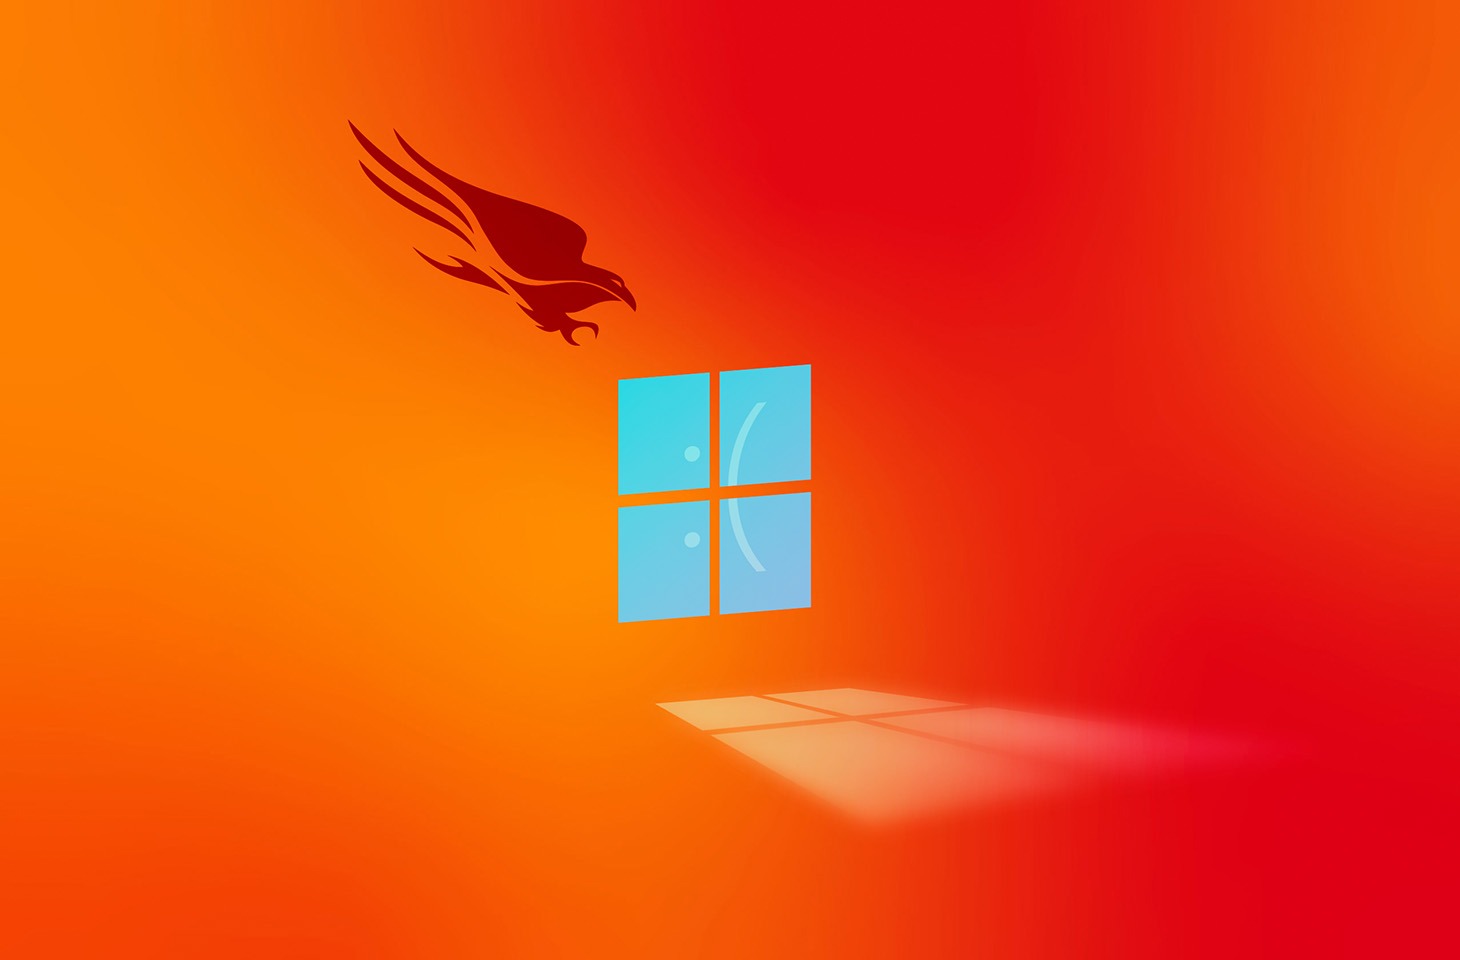 Microsoft plant Änderungen an Windows nach dem CrowdStrike-Vorfall